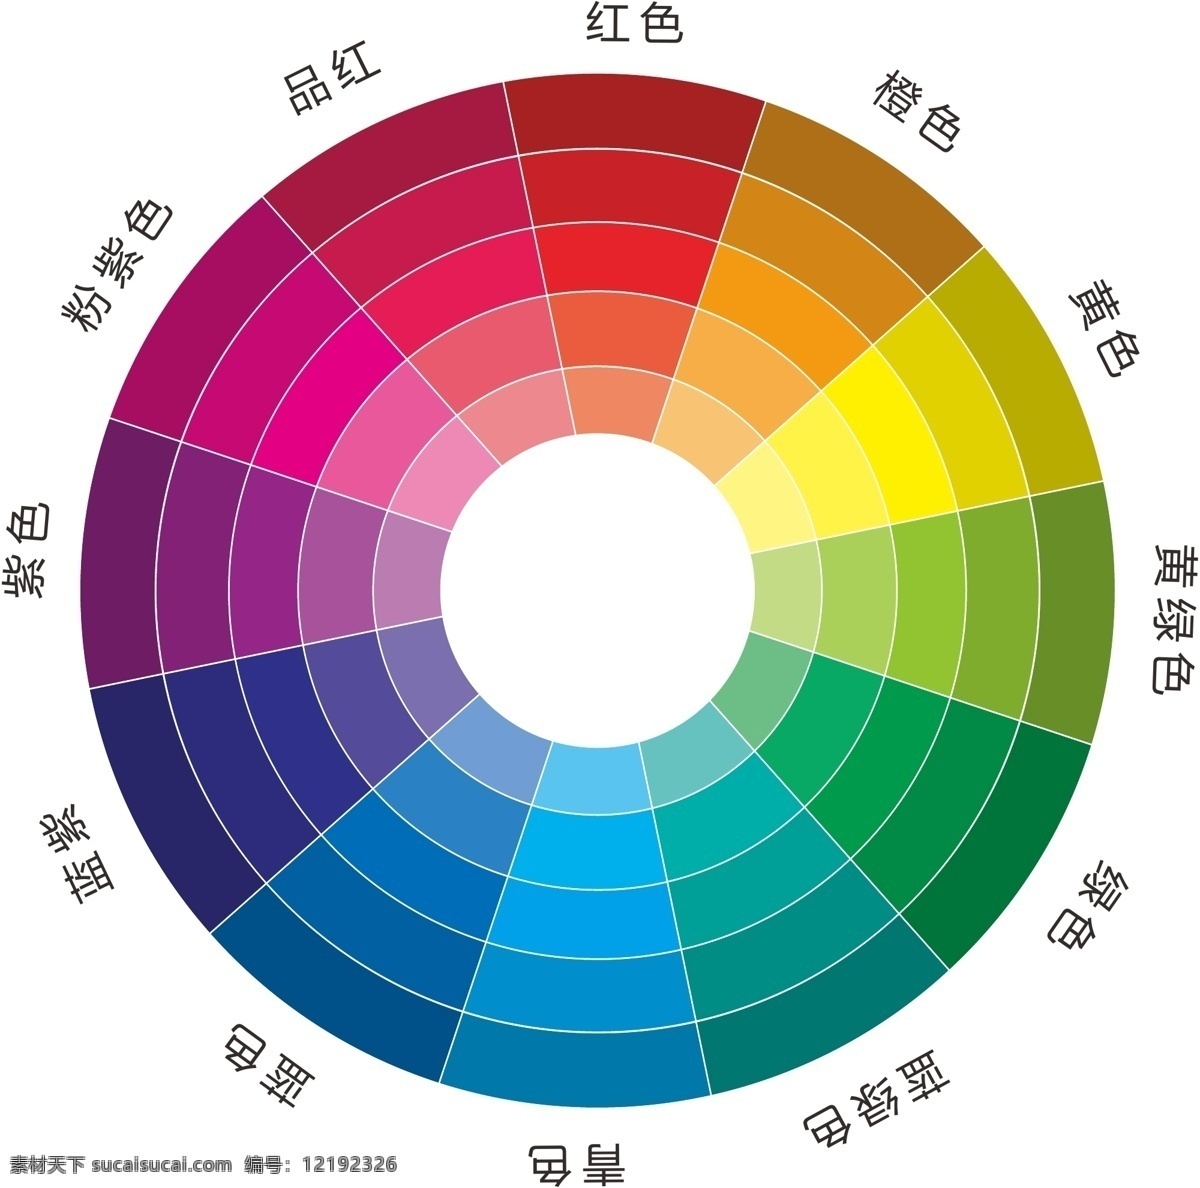 十二色相环 色相环 12色 色相圆环 渐变色环 色彩构成 颜色 圆环 同心色相环